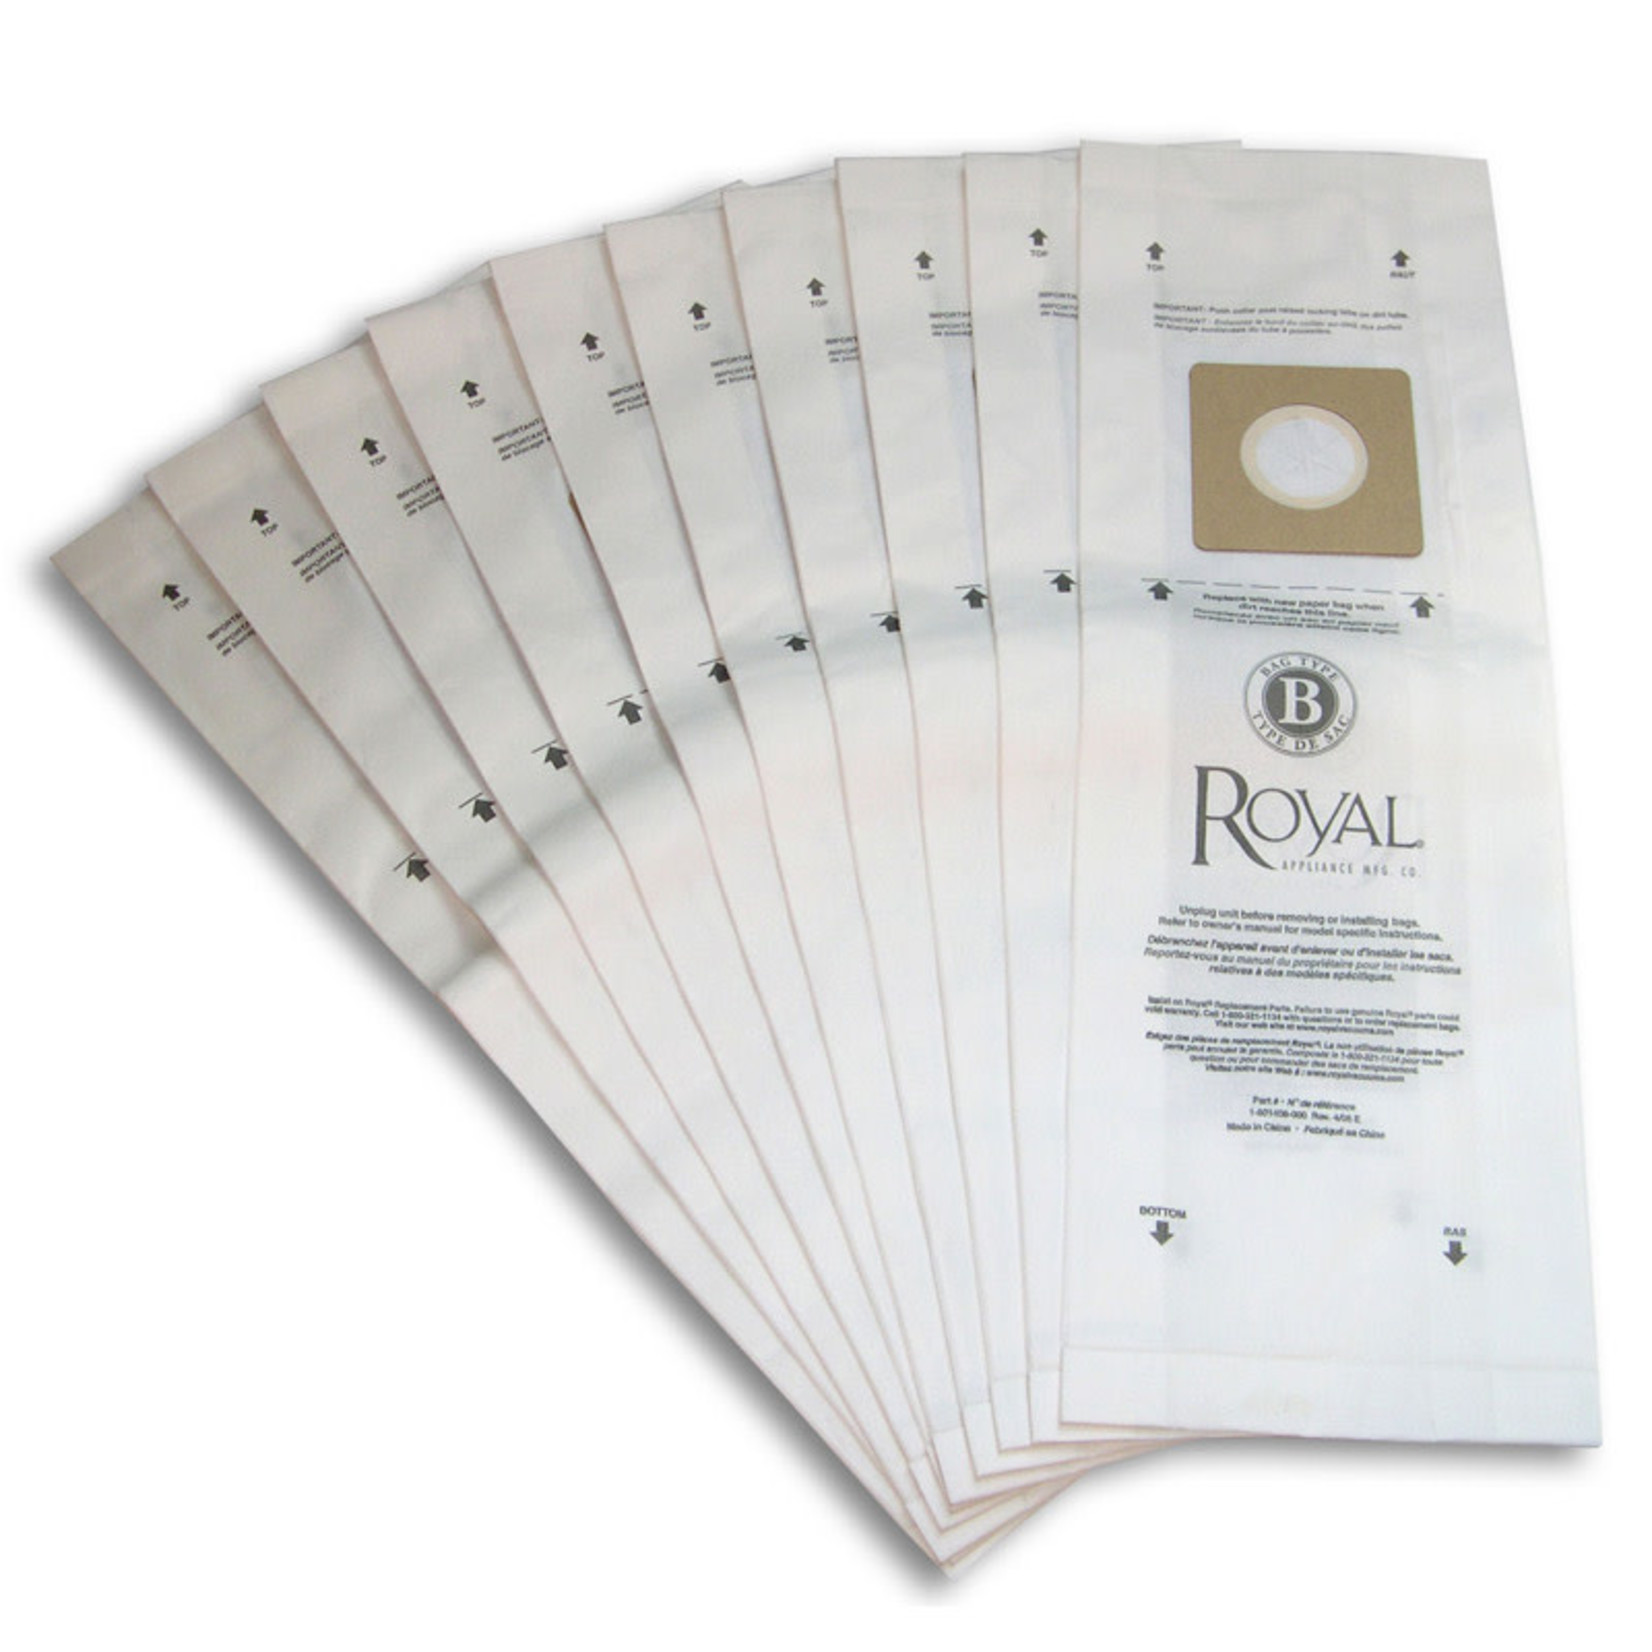 Royal Royal Type "B" Paper Bag (10pk)